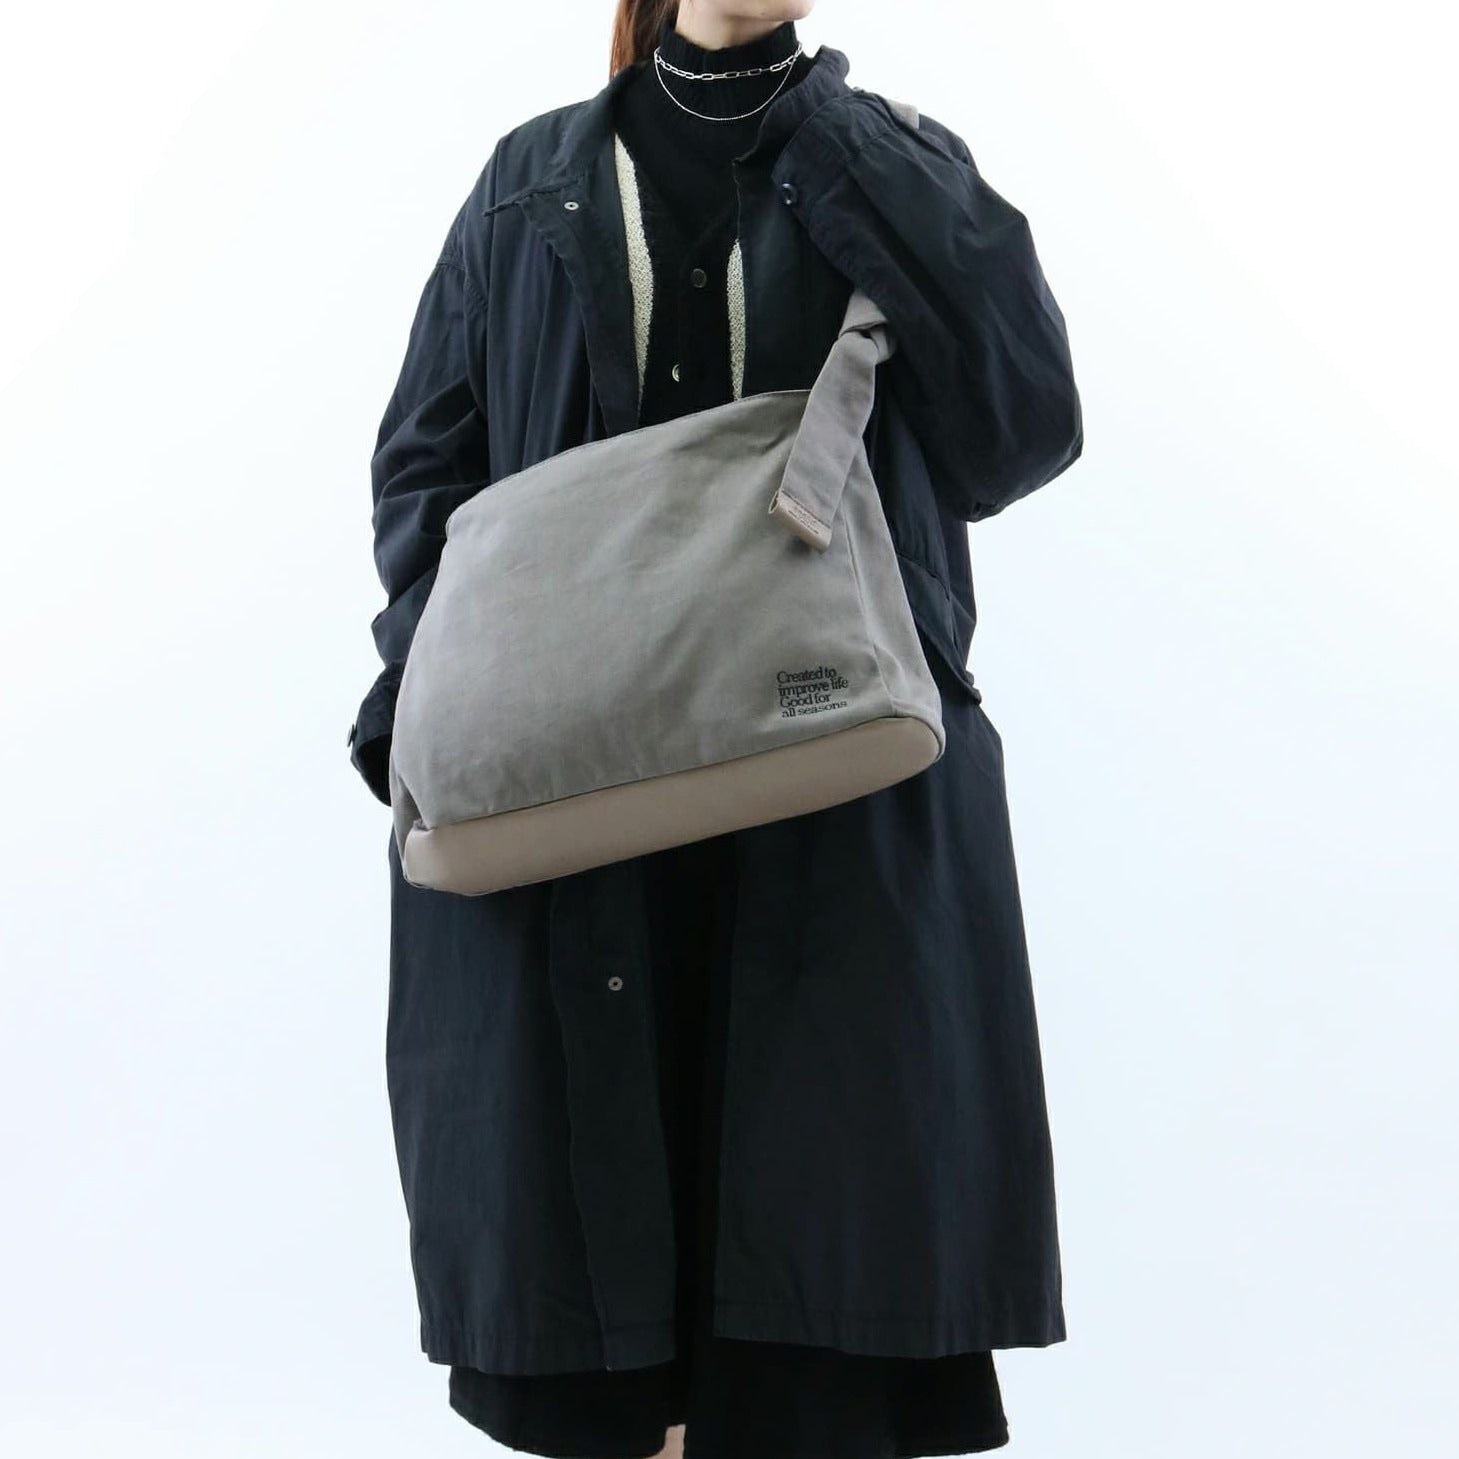 Anello Universal Shoulder Bag in Black